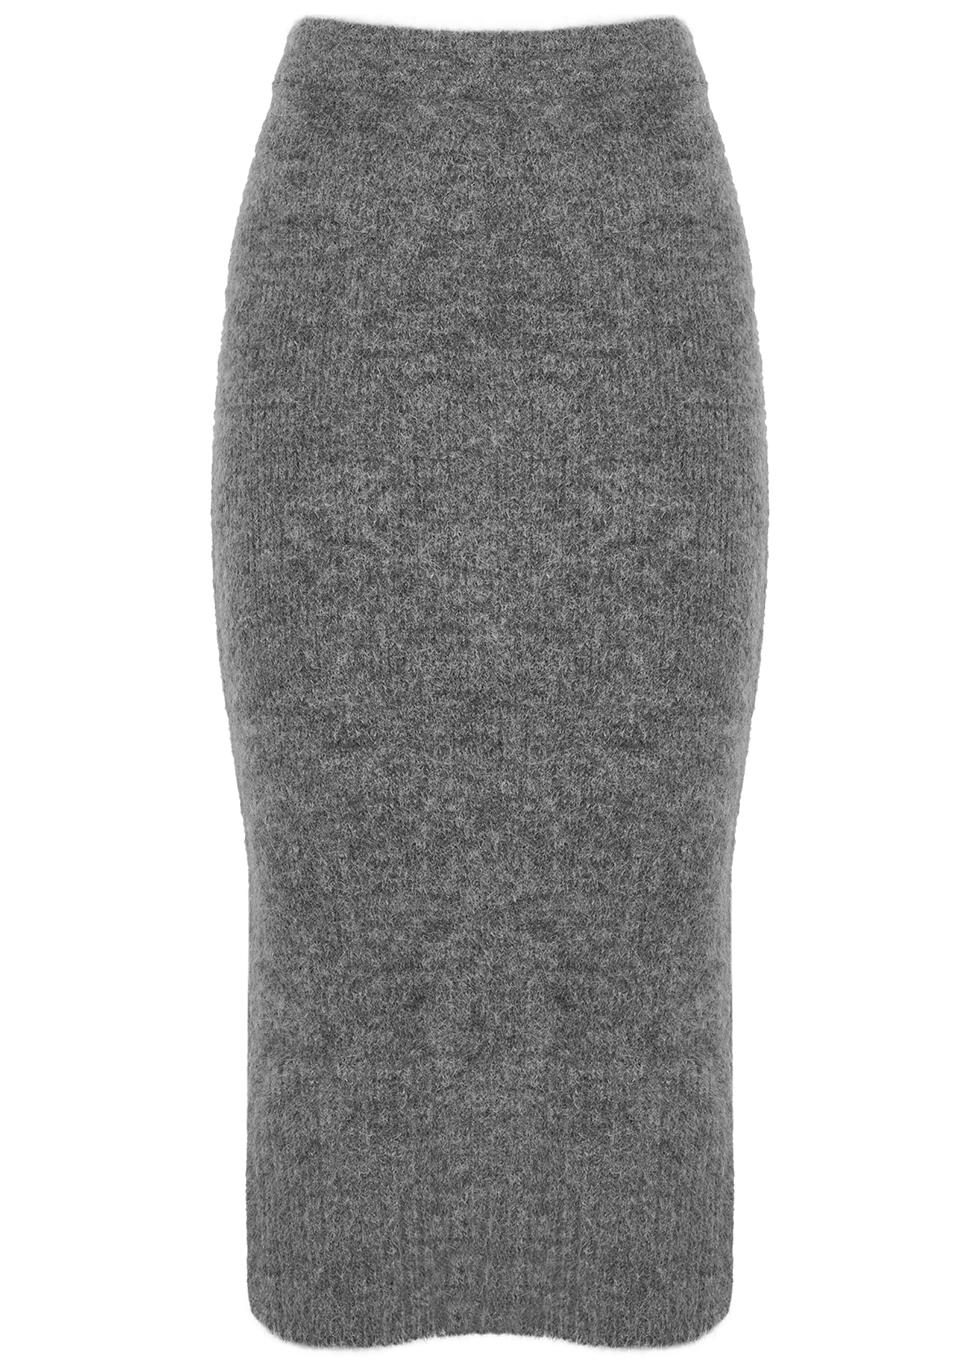 Pierre grey knitted midi skirt by DAY BIRGER ET MIKKELSEN